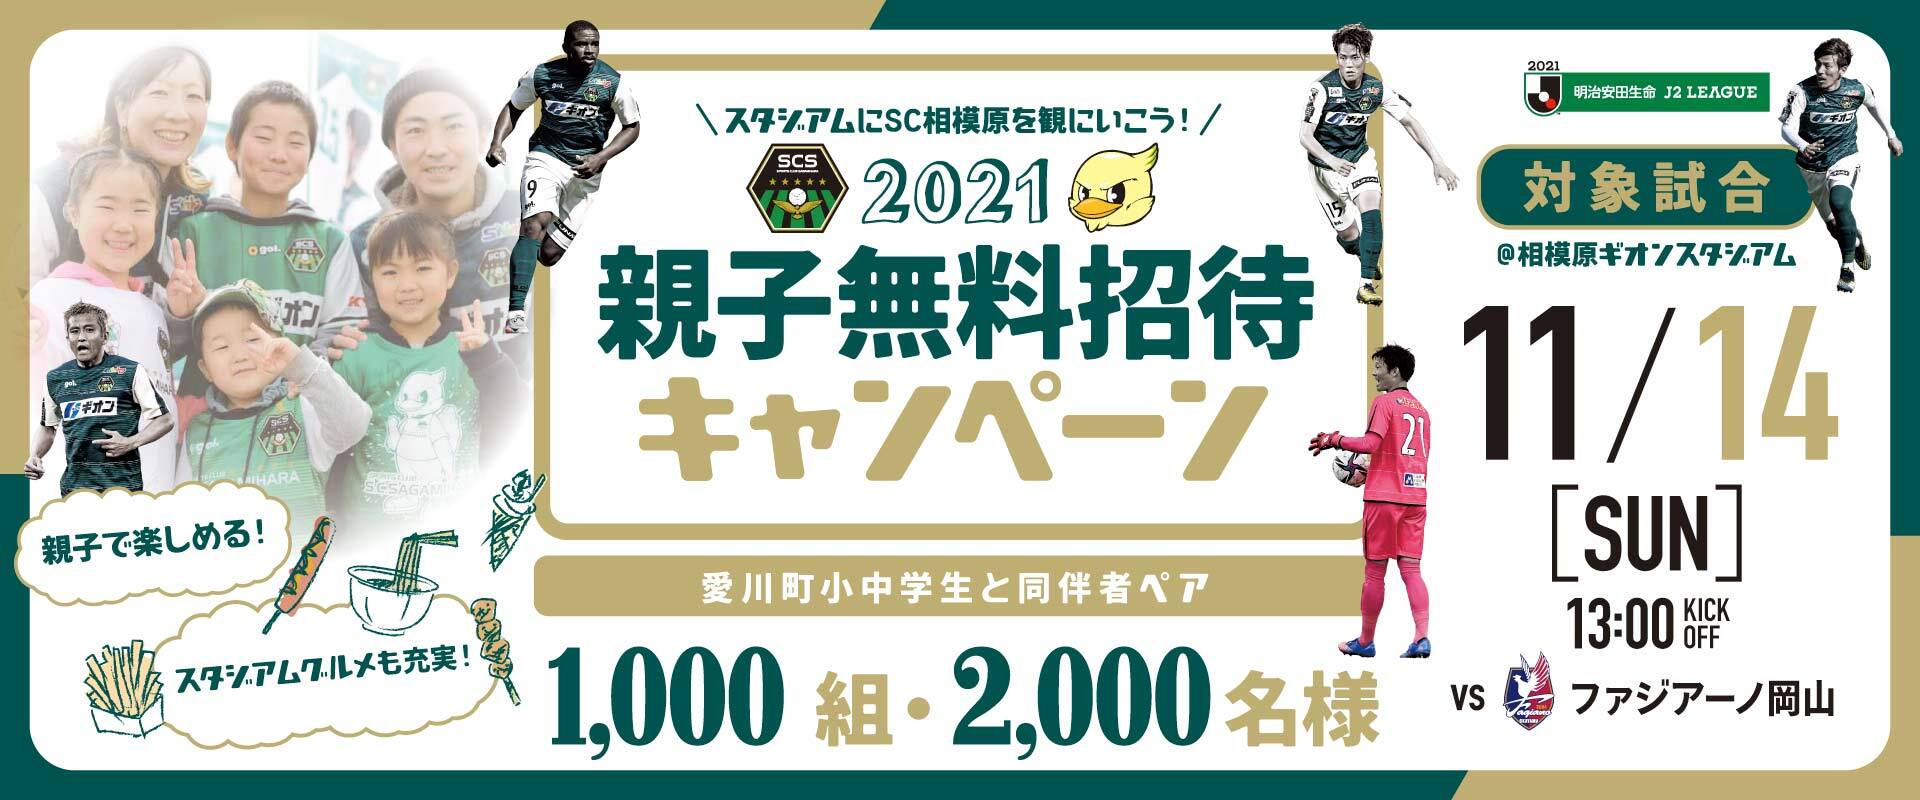 2021愛川町親子無料招待キャンペーン